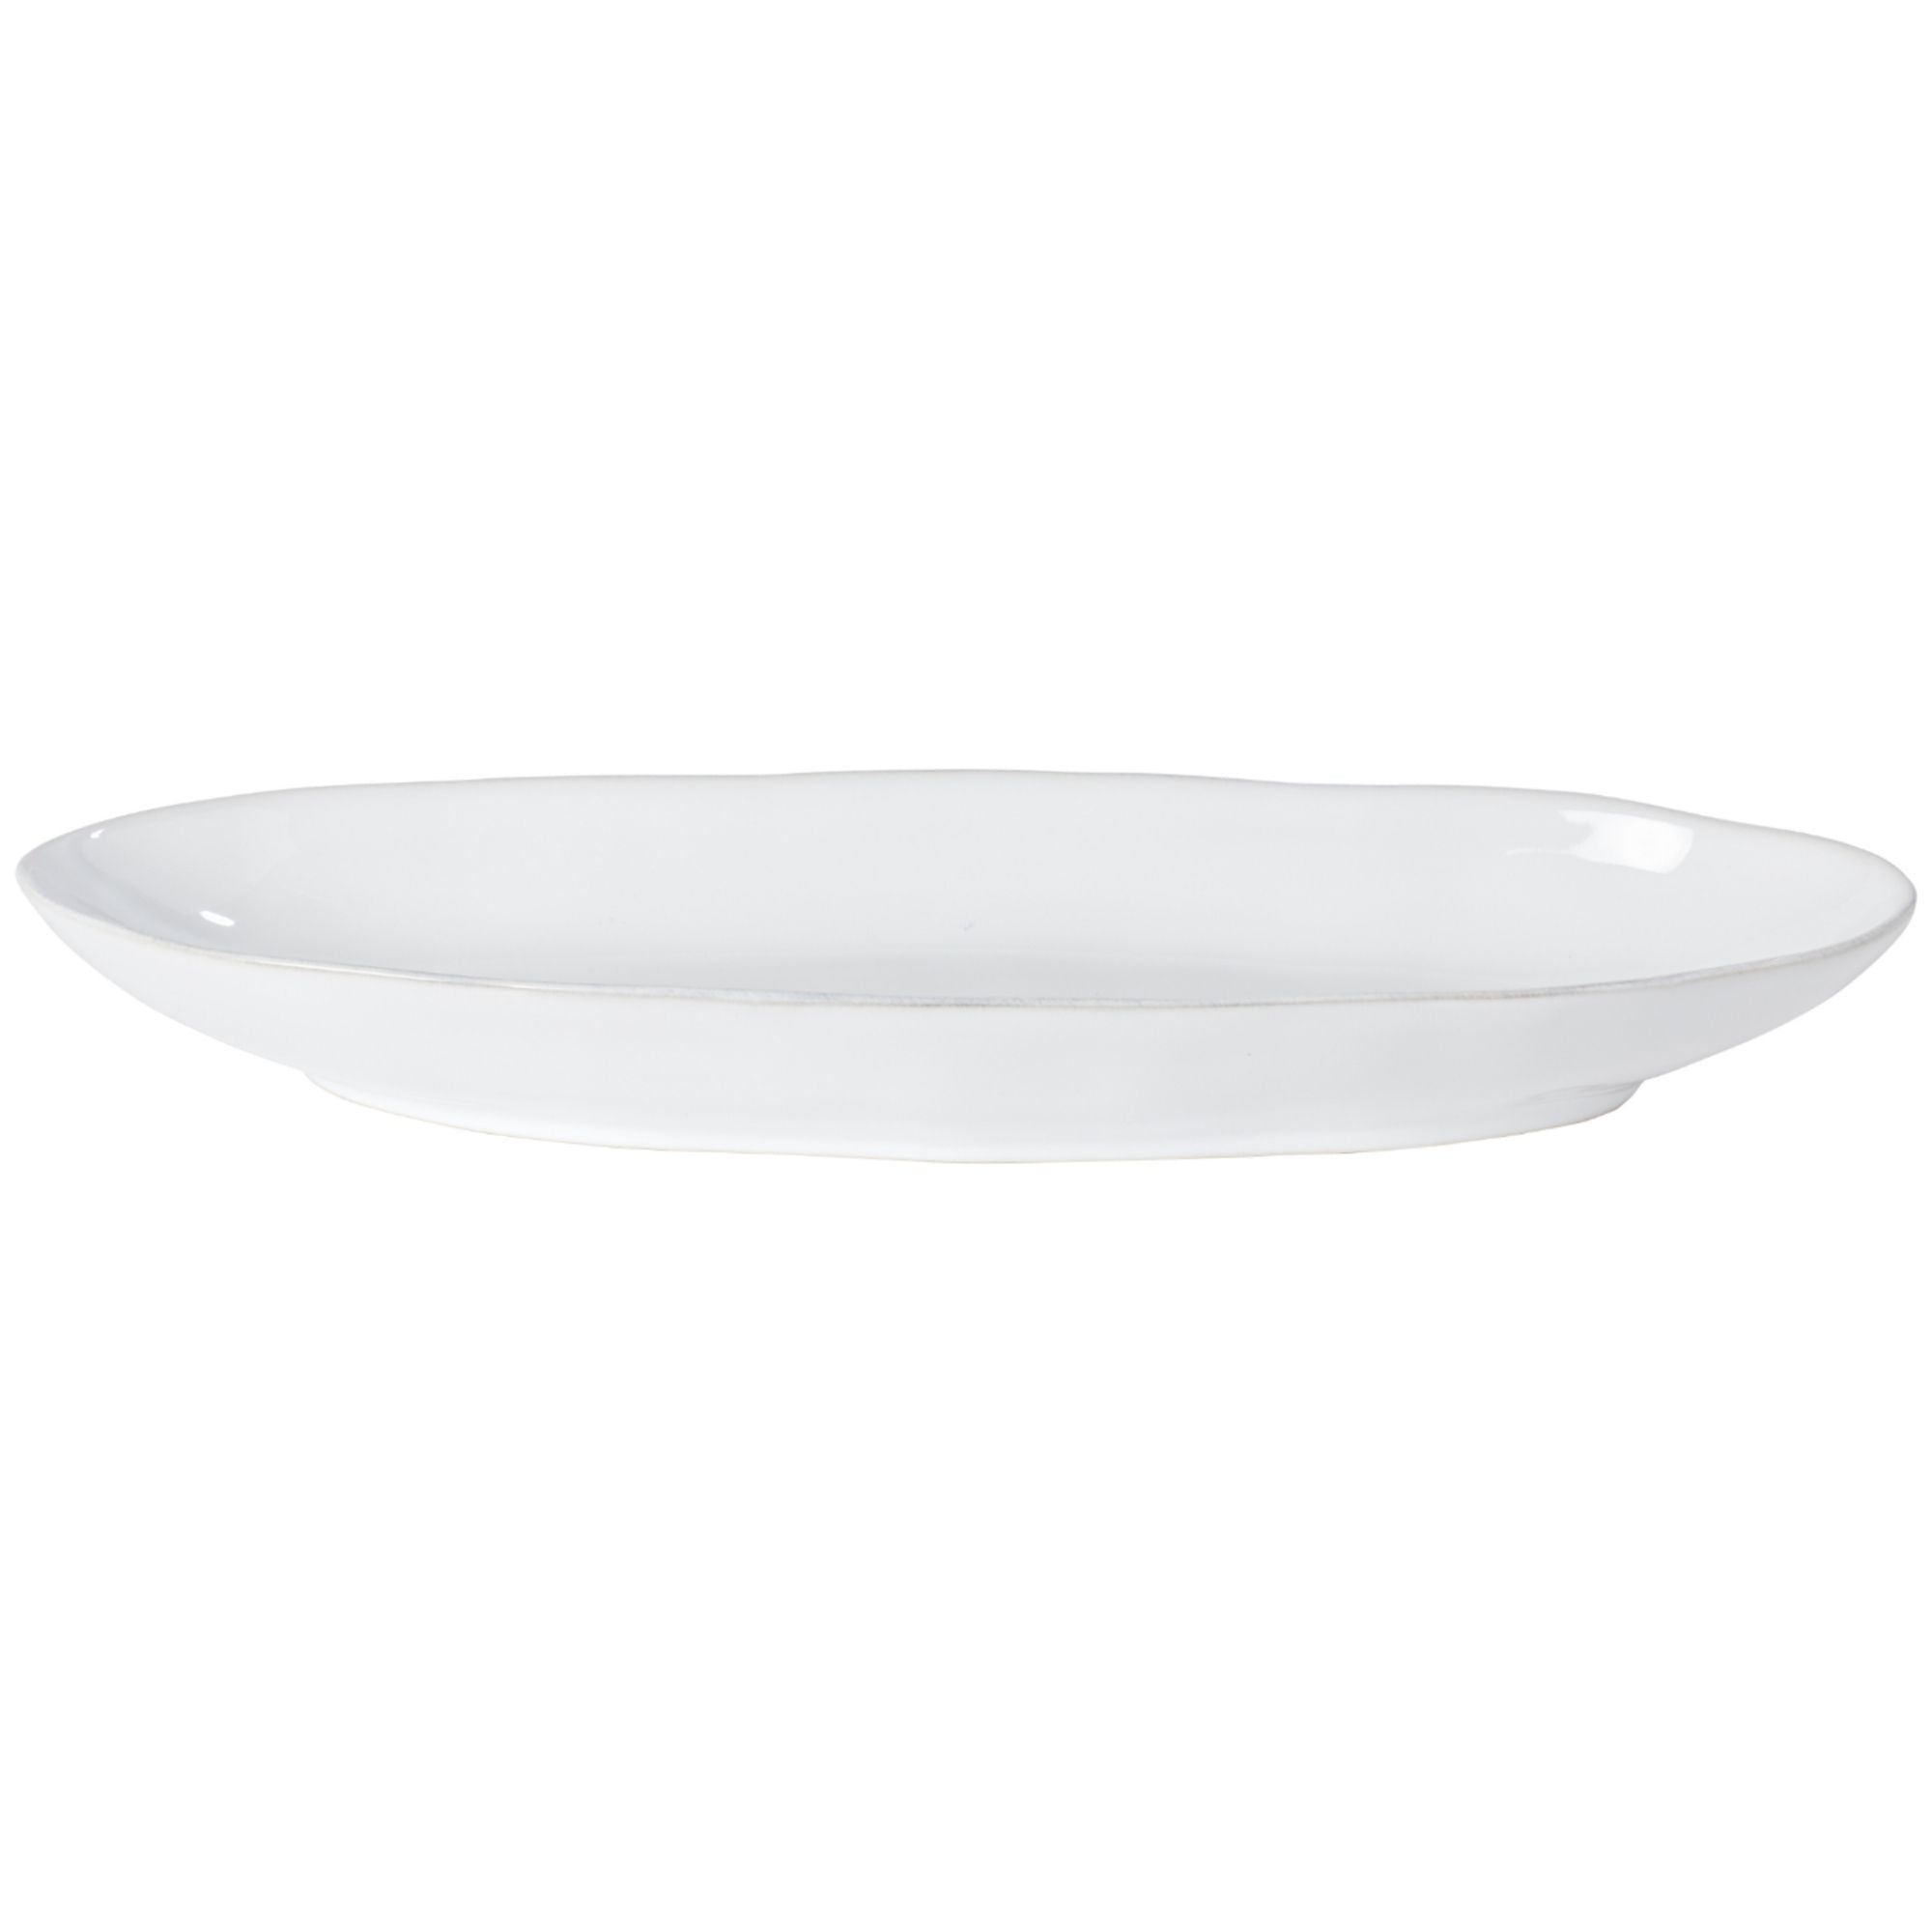 Livia Oval Platter 16" White